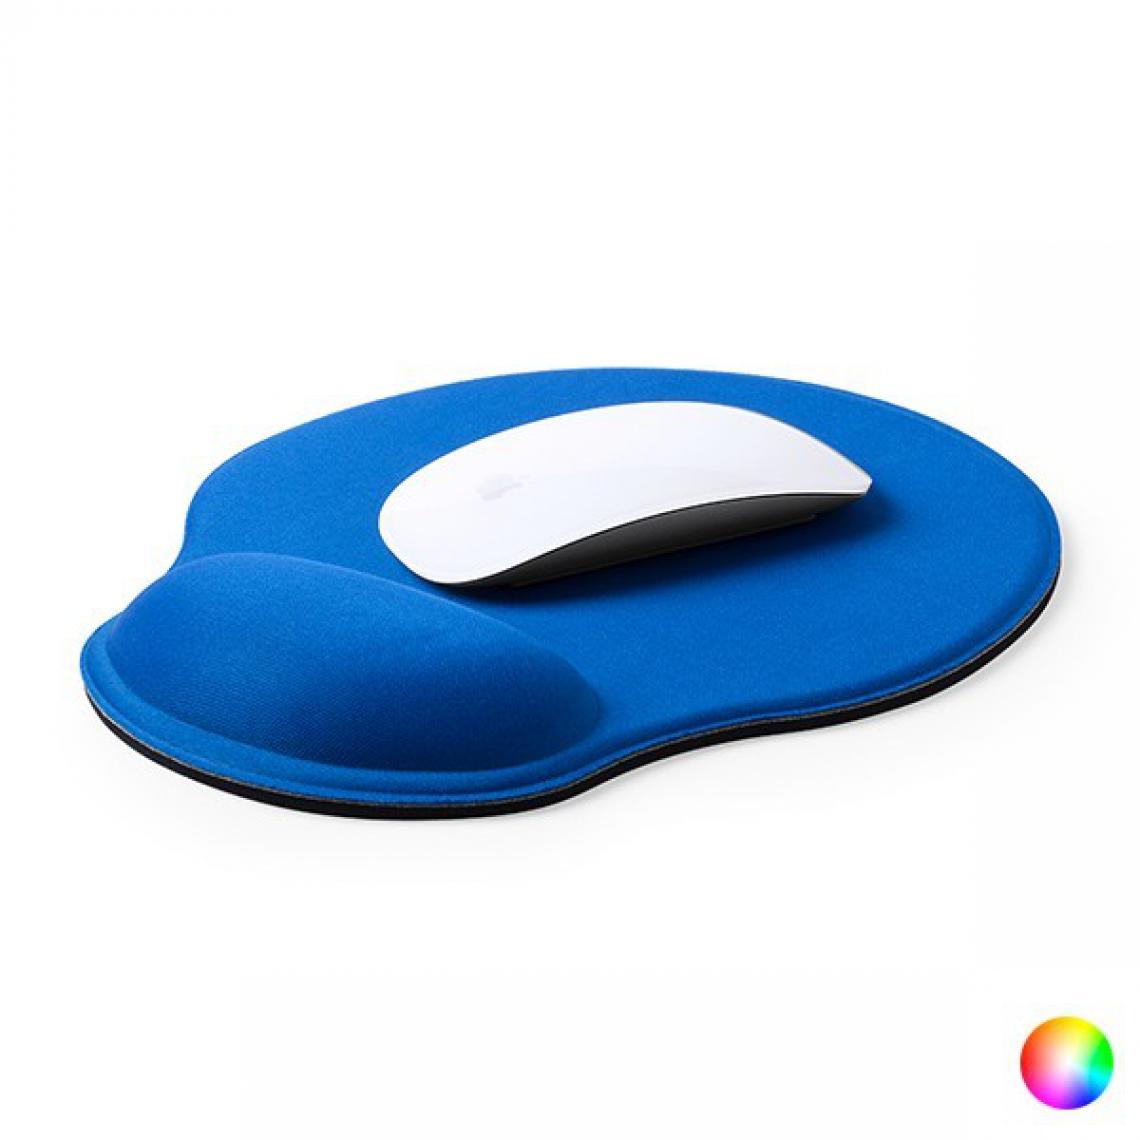 Totalcadeau - Tapis de souris ergonomique avec repose-poignet - Tapis design pour ordinateur et portable Couleur - Noir pas cher - Souris